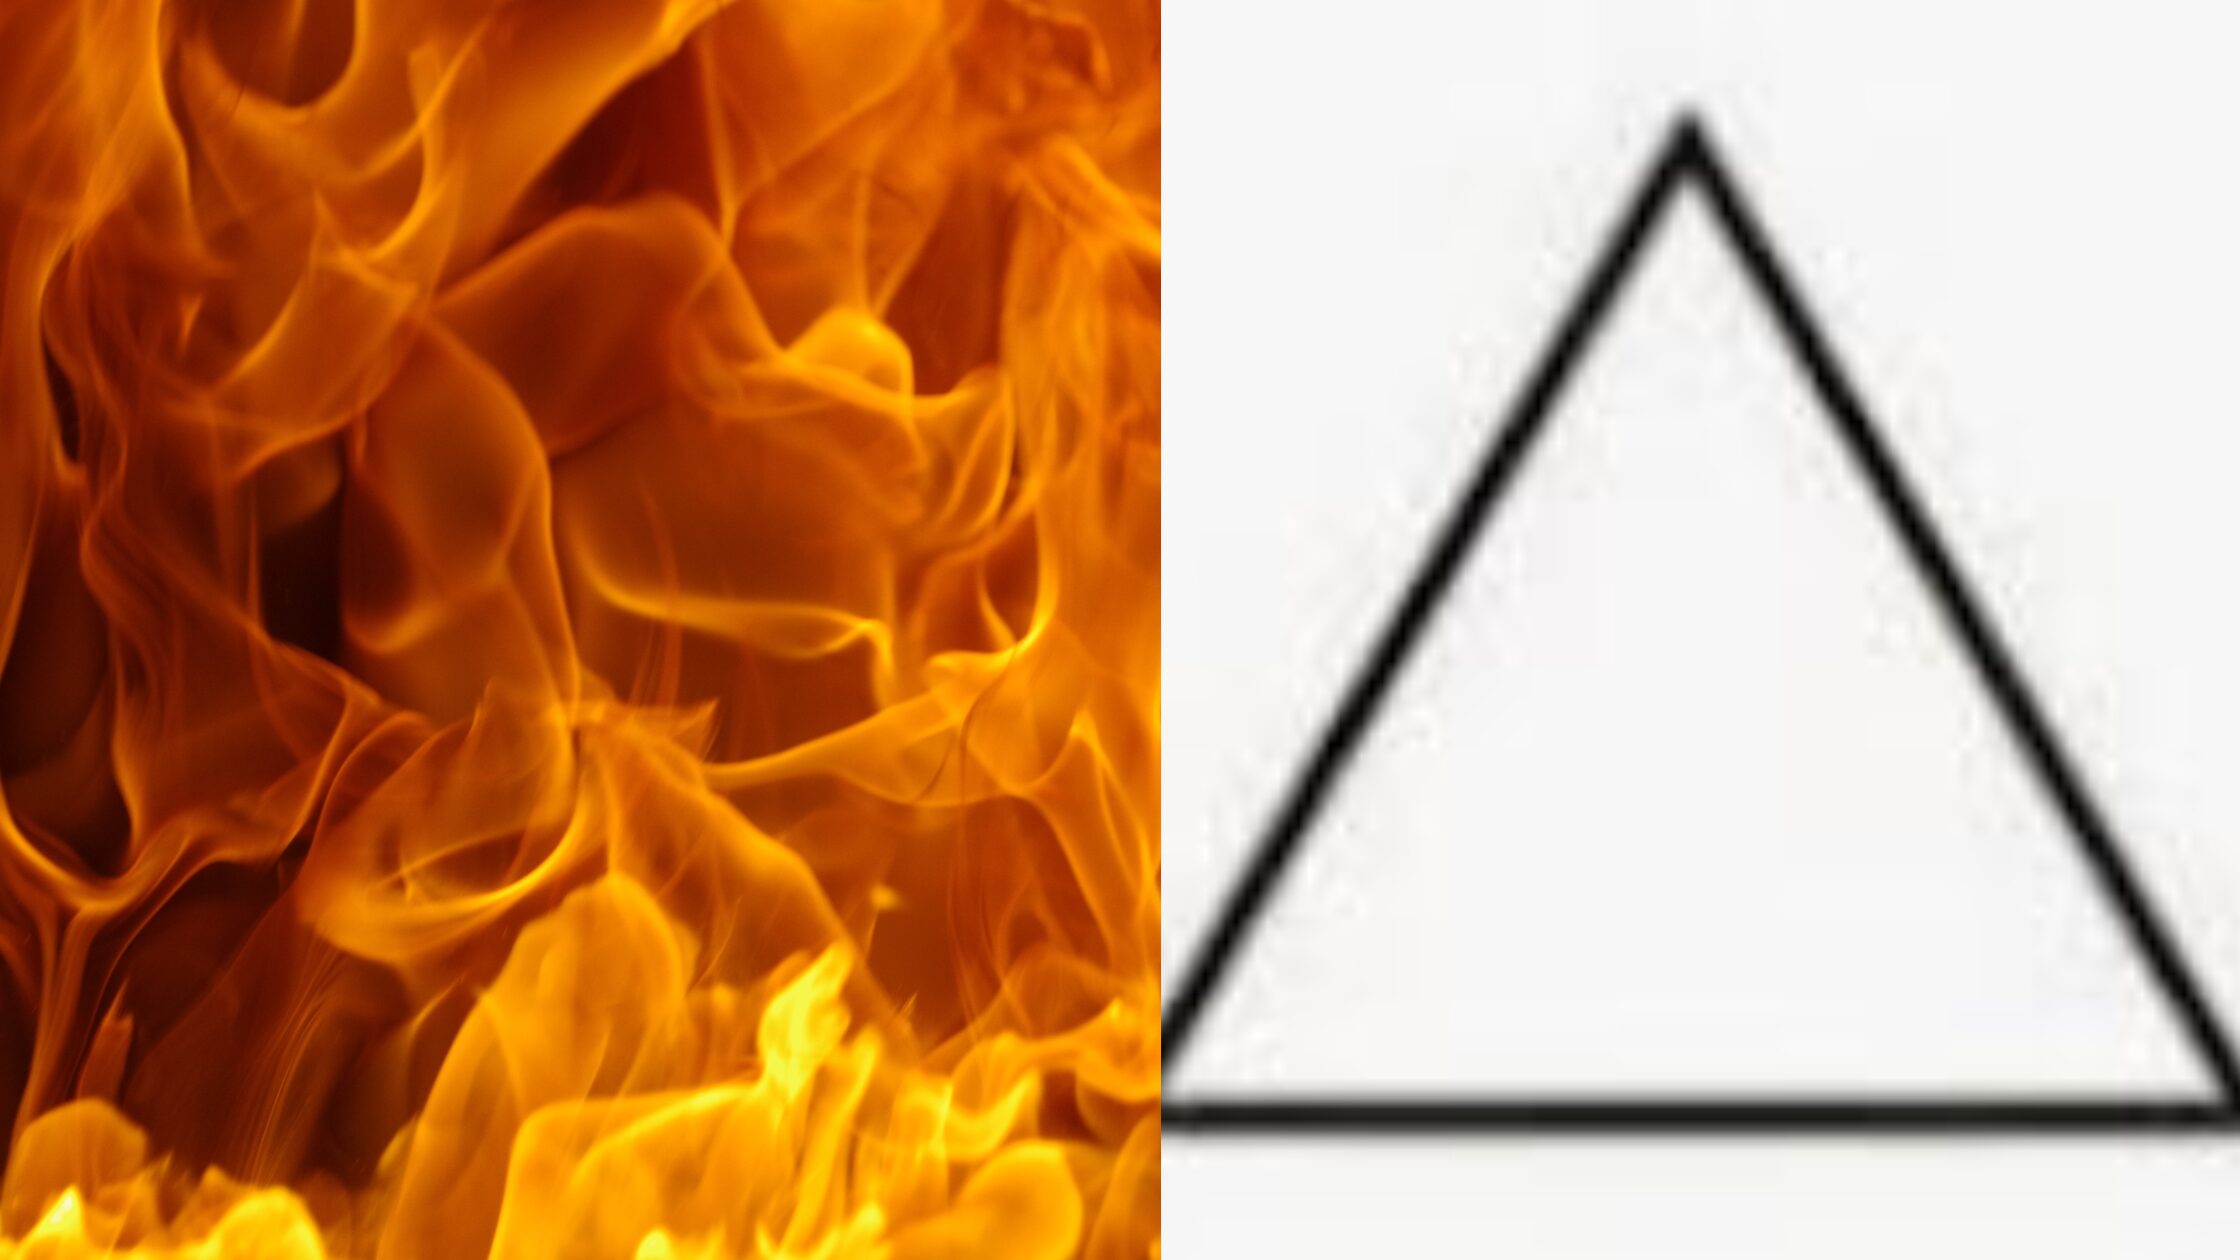 Das Element Feuer